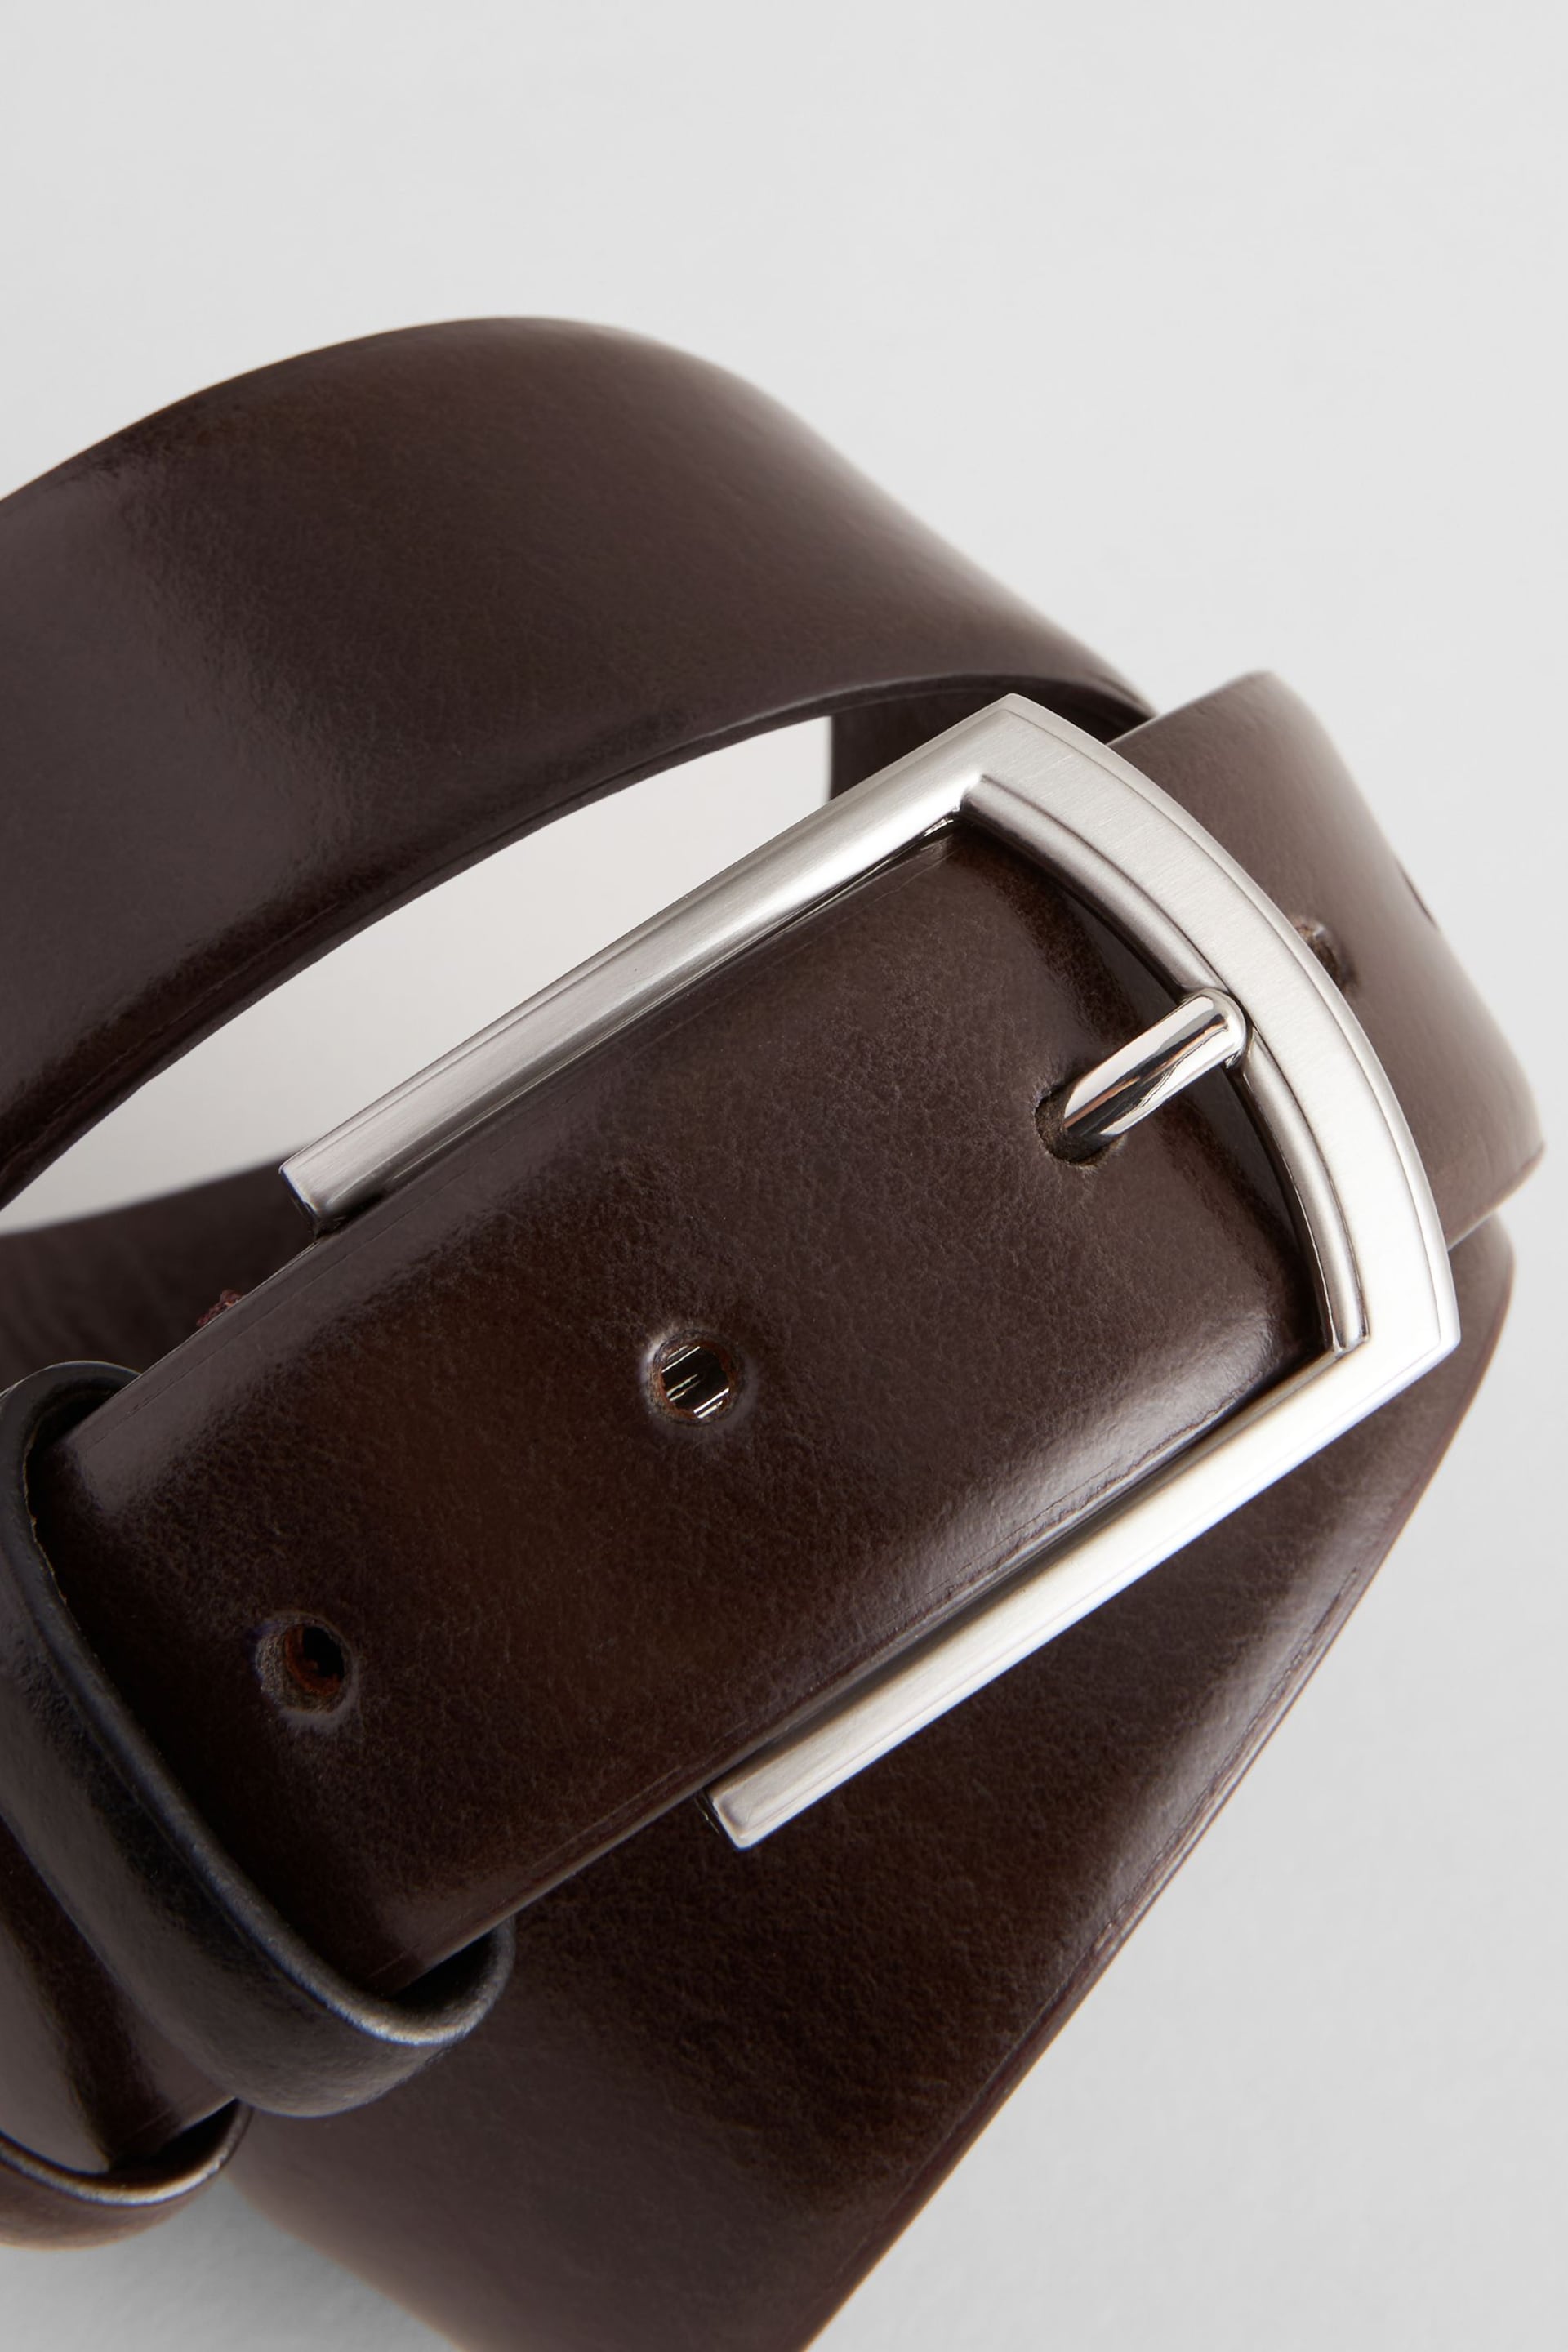 Brown Formal Leather Belt - Image 3 of 3